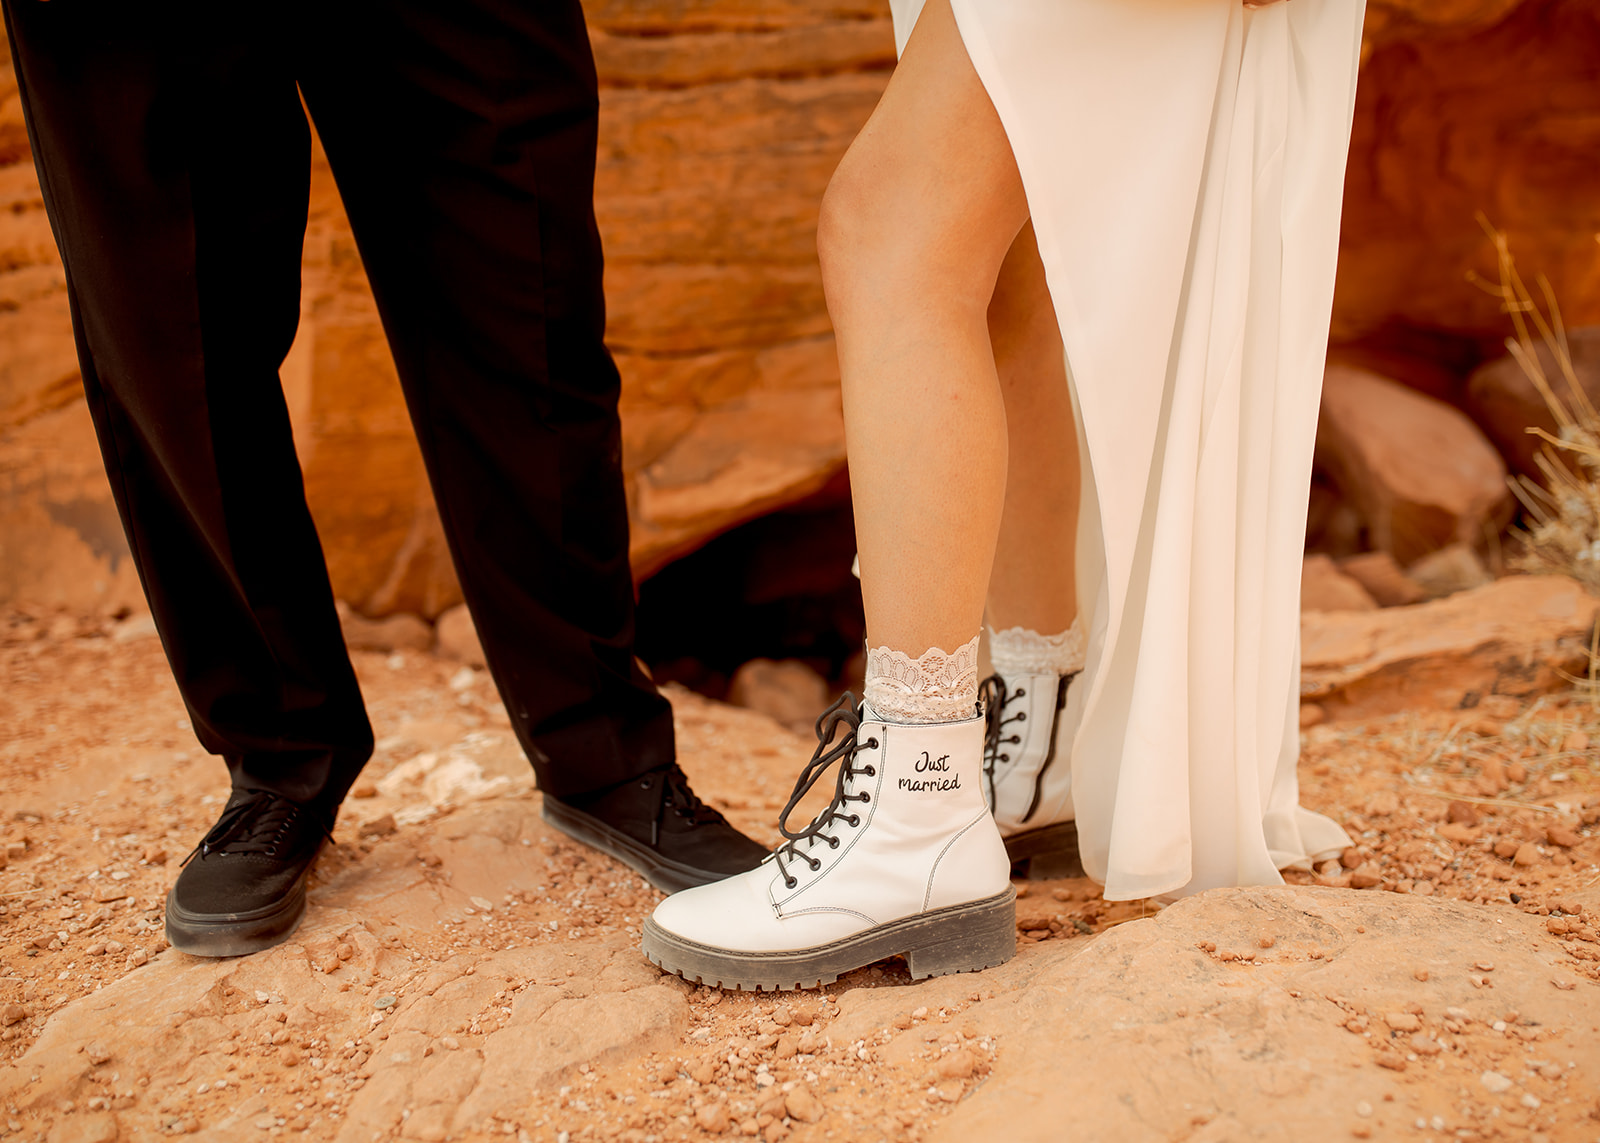 Groom in Black Vans and Bride's Custom Just Married Boots for Desert Wedding in Las Vegas Nevada 